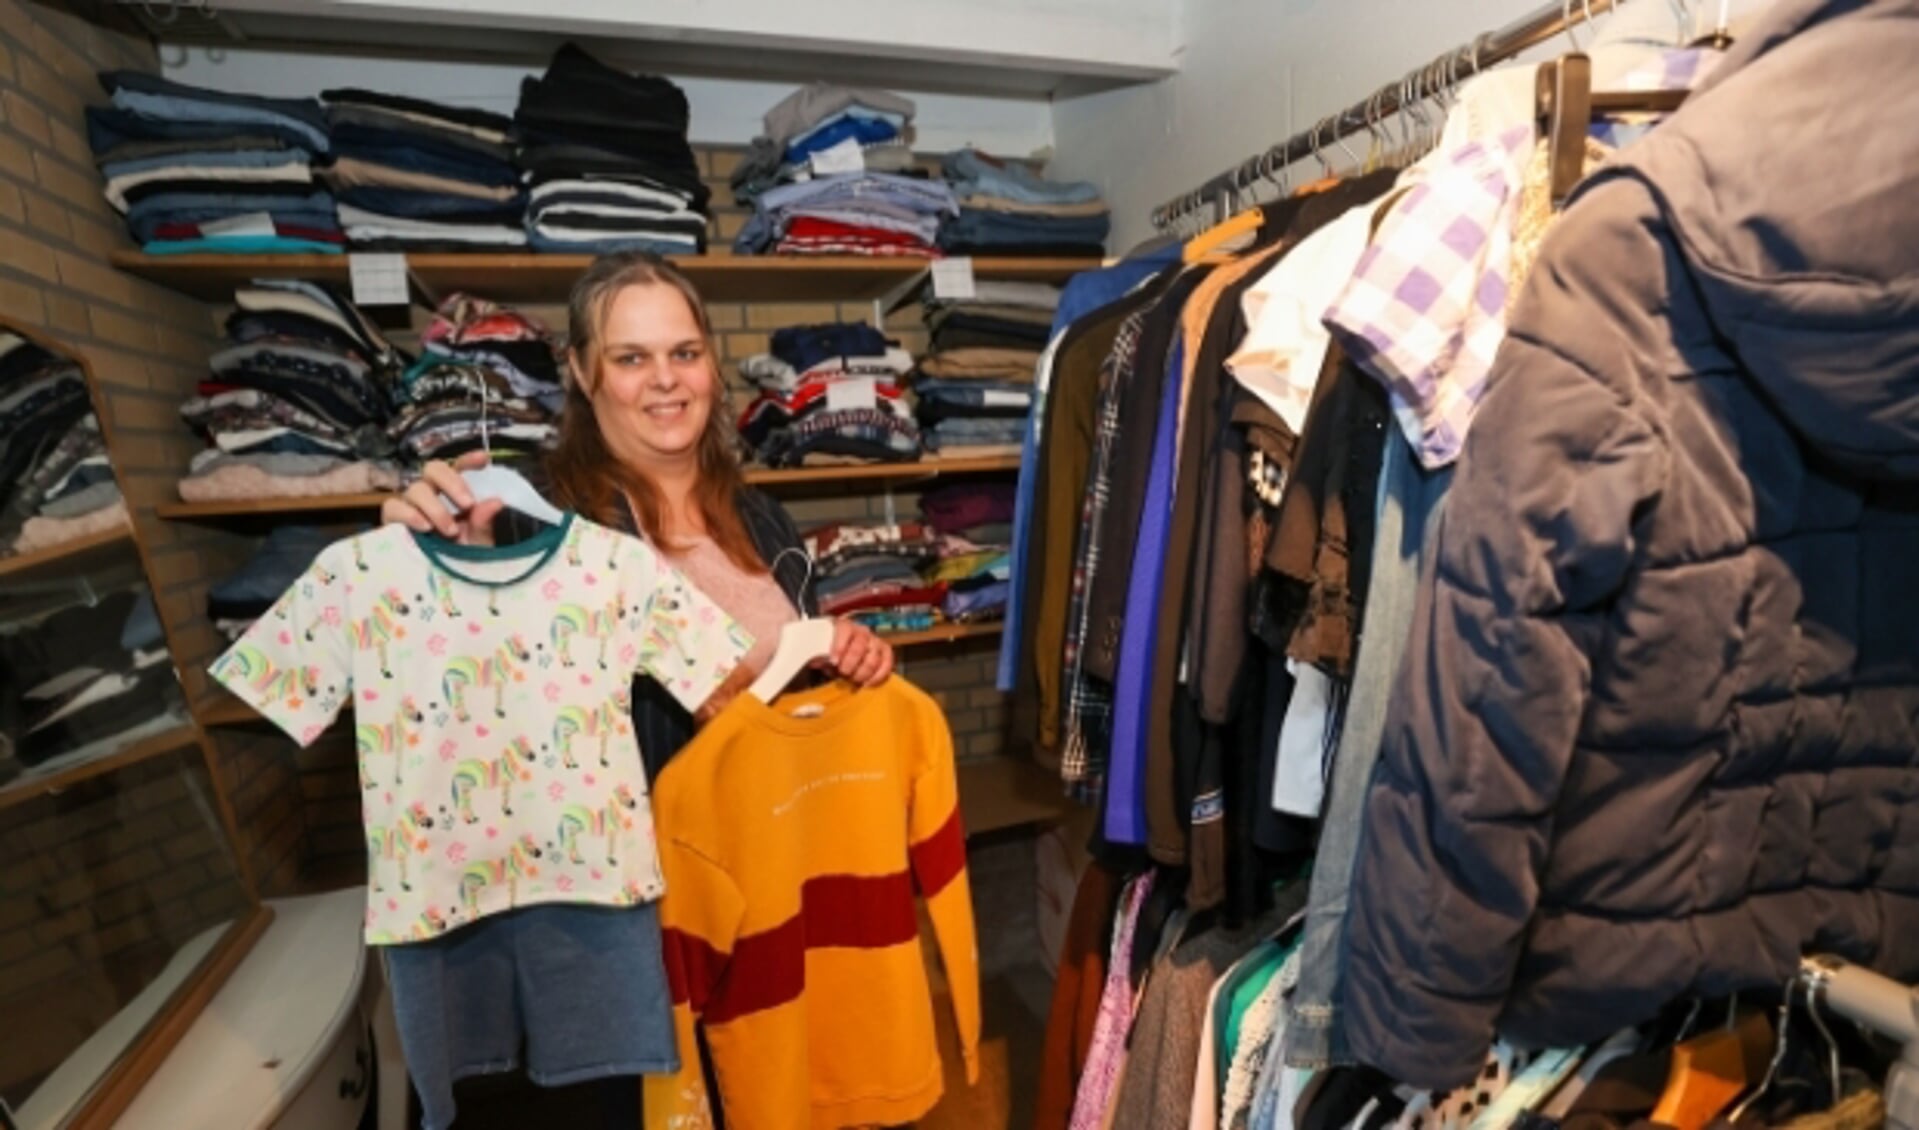 Omdat de Wintelrese veel kleding ontvangt, geeft ze de kleren waar ze geen ruimte voor heeft aan Voedselbank Bladel. 